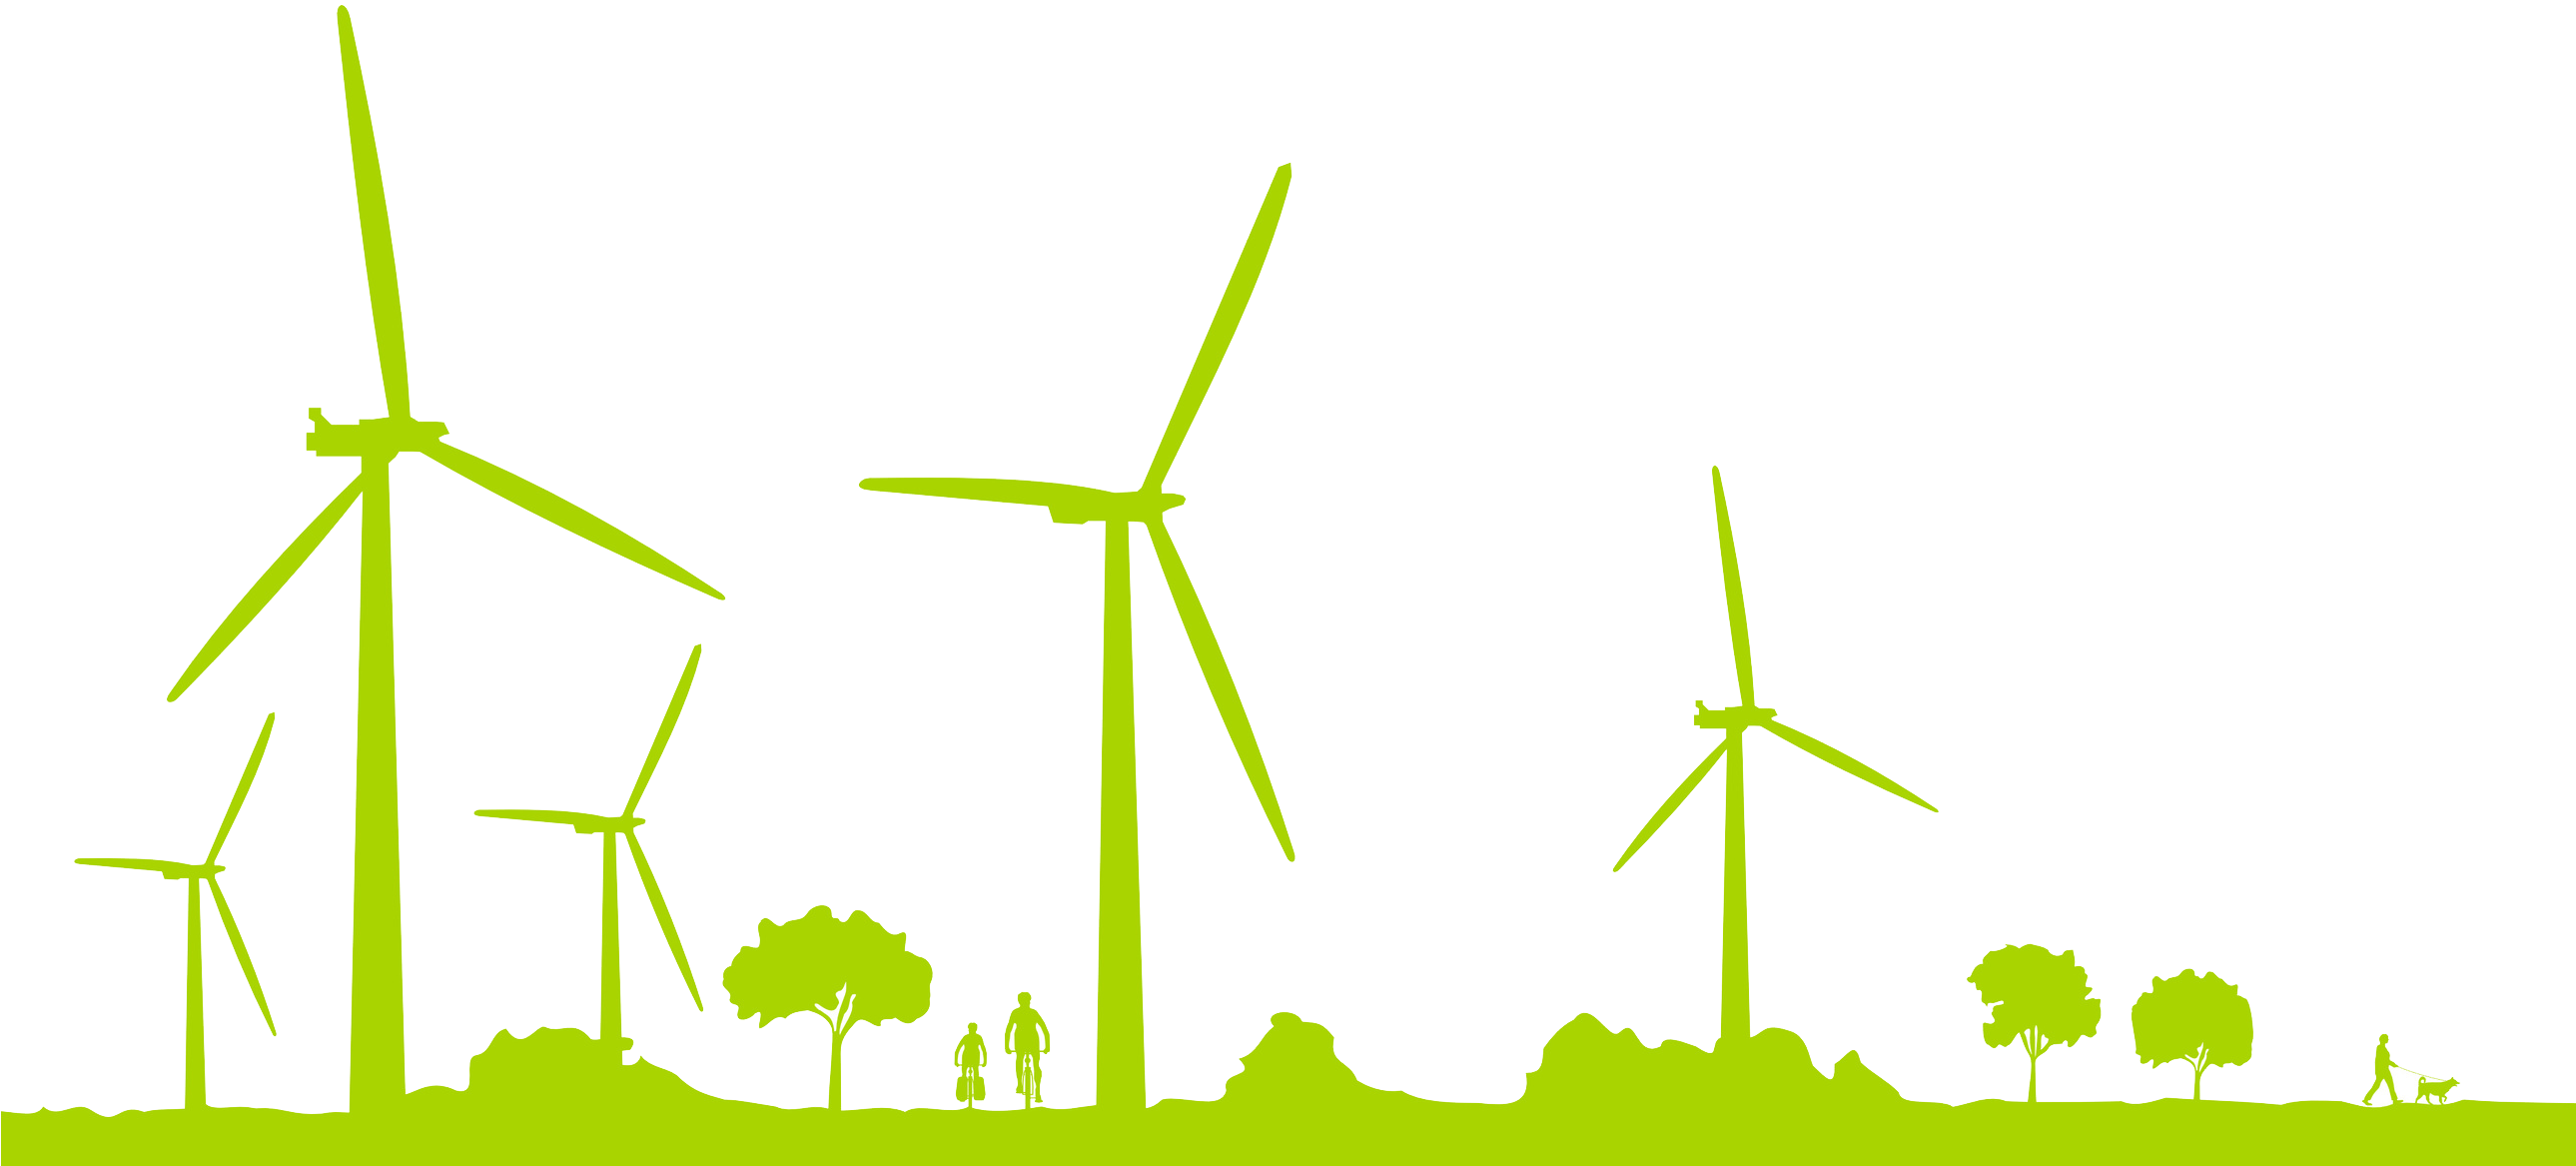 ВИЭ - Ветроэнергетика - Wind Energy - ветротурбины - ветроустановки - ветростанции - ветрогенерация - 15 июня Всемирный день ветра